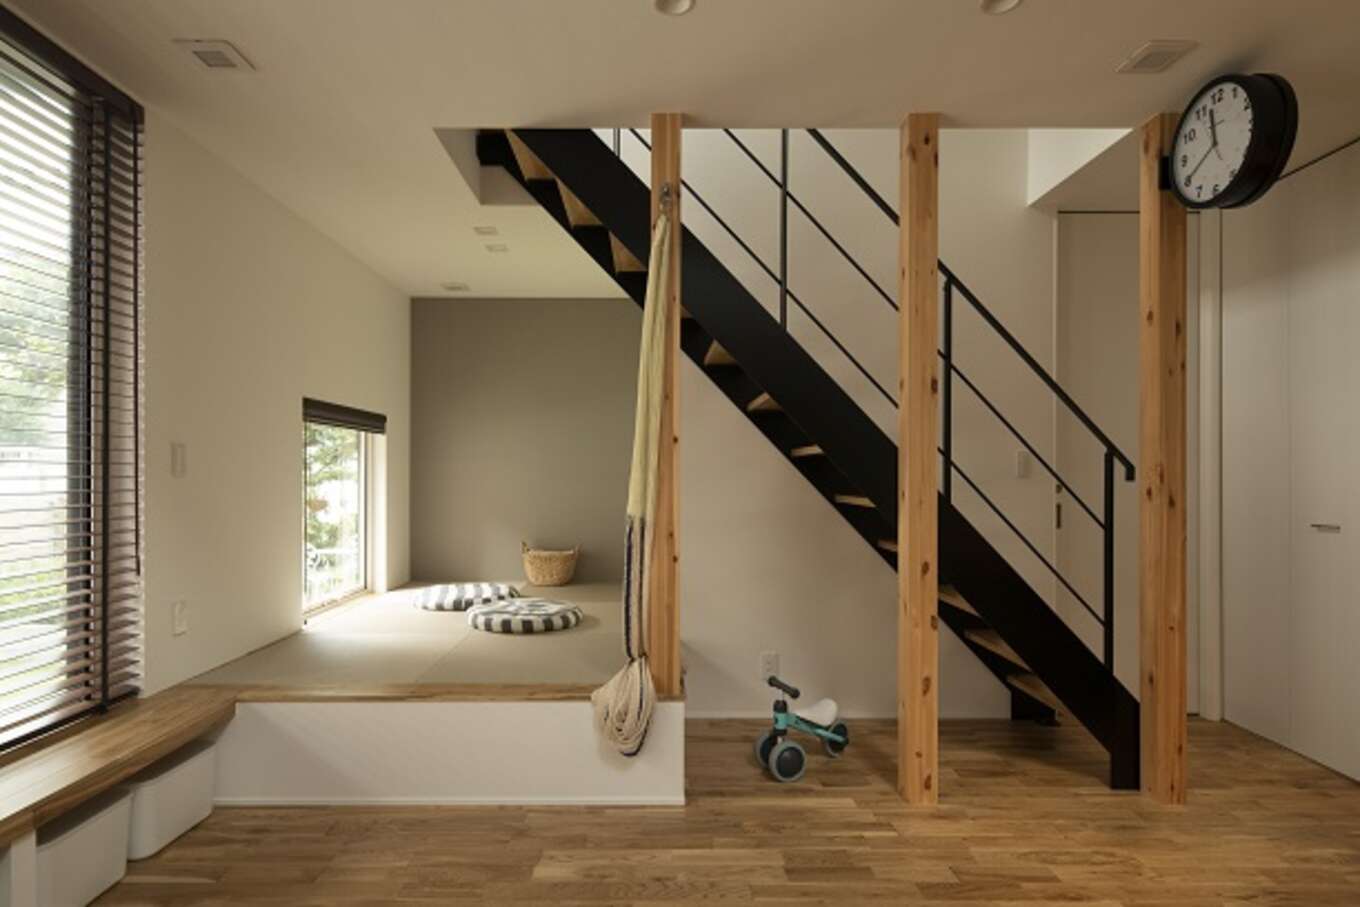 和紙製の畳を敷いた小上りの和室